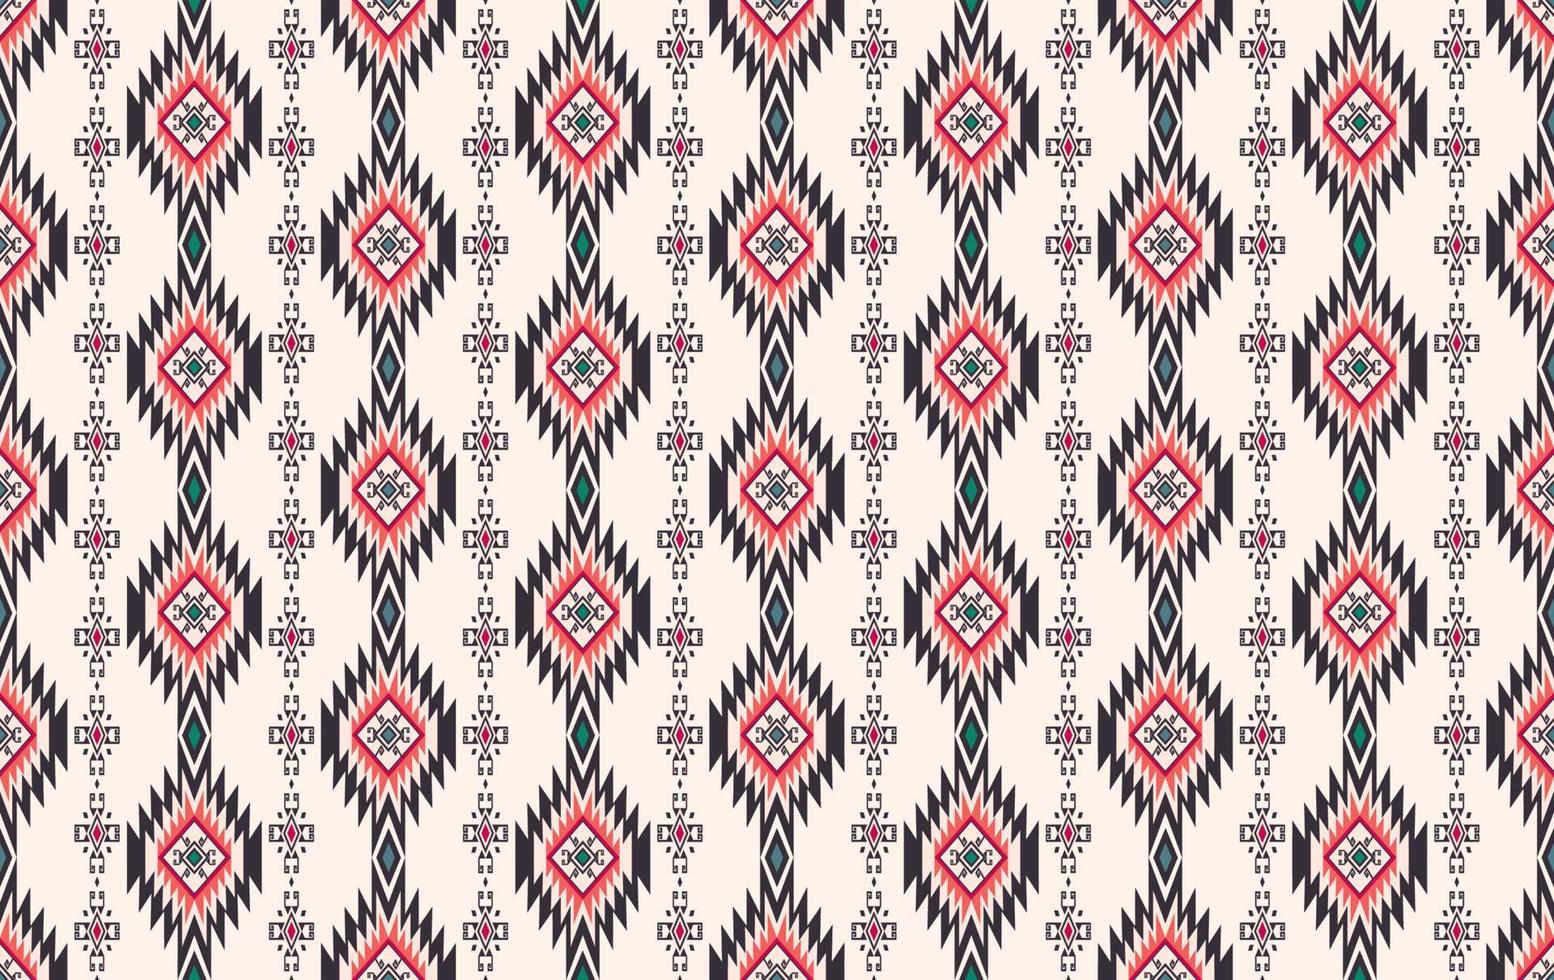 fundo sem emenda de forma geométrica asteca nativa rosa vermelha colorida. padrão étnico, tribal, ikat, batik. uso para tecido, têxtil, elementos de decoração de interiores, estofados, embrulhos. vetor